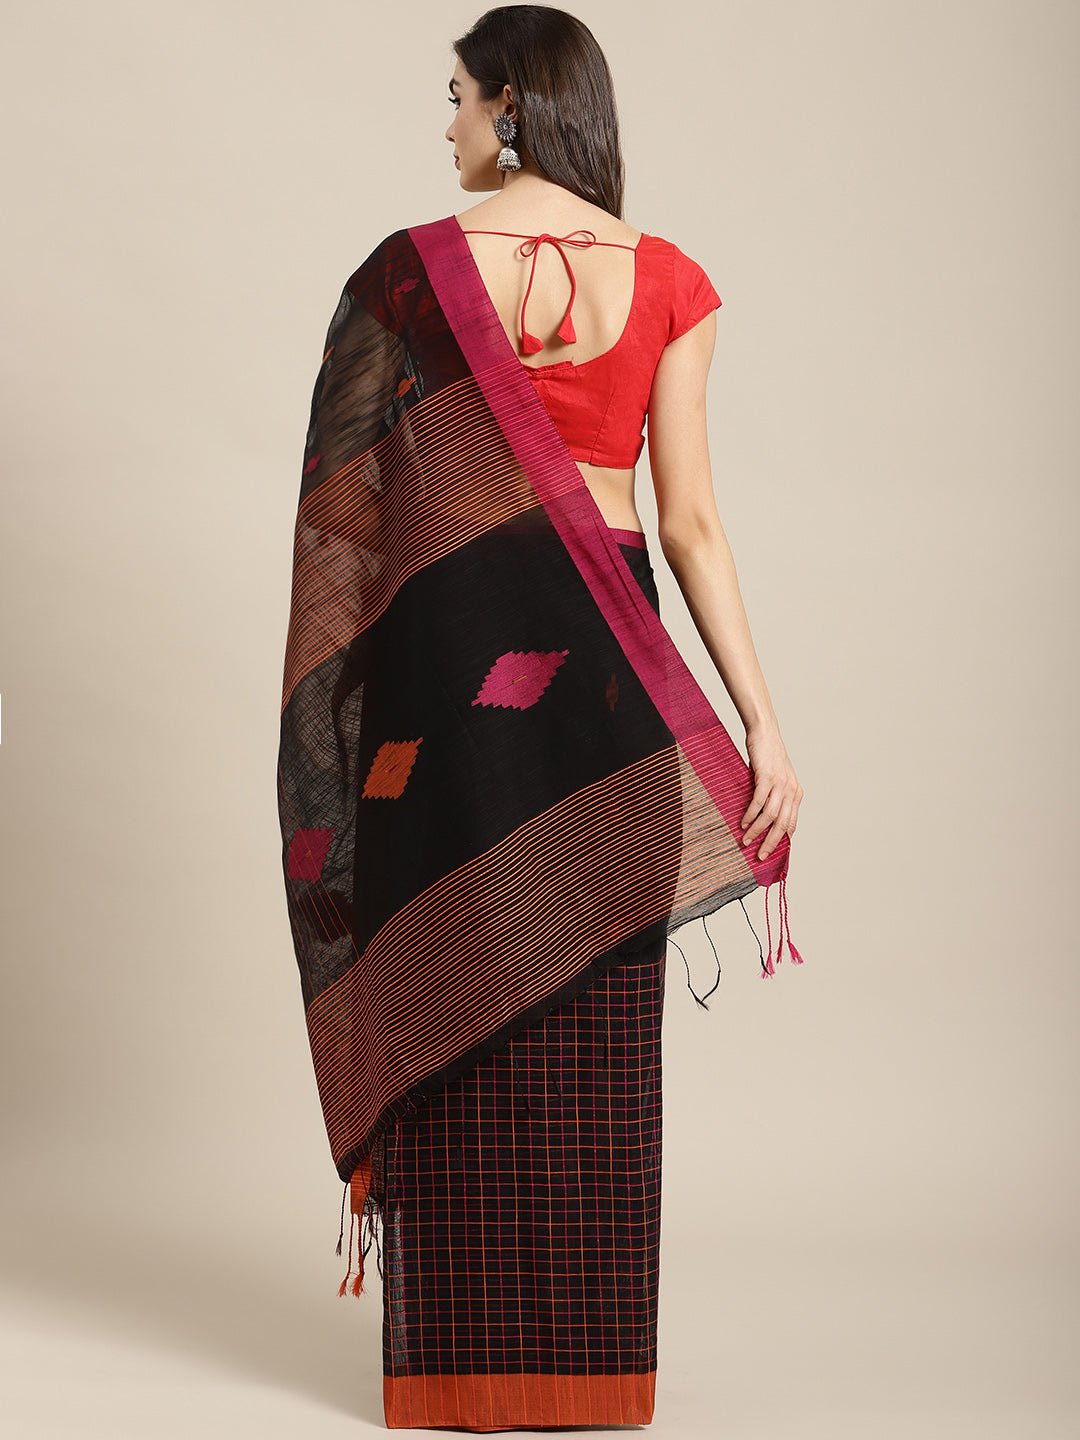 Black and Red, Kalakari India Ikat Silk Cotton Woven Design Saree with Blouse SHBESA0038 - Kalakari India